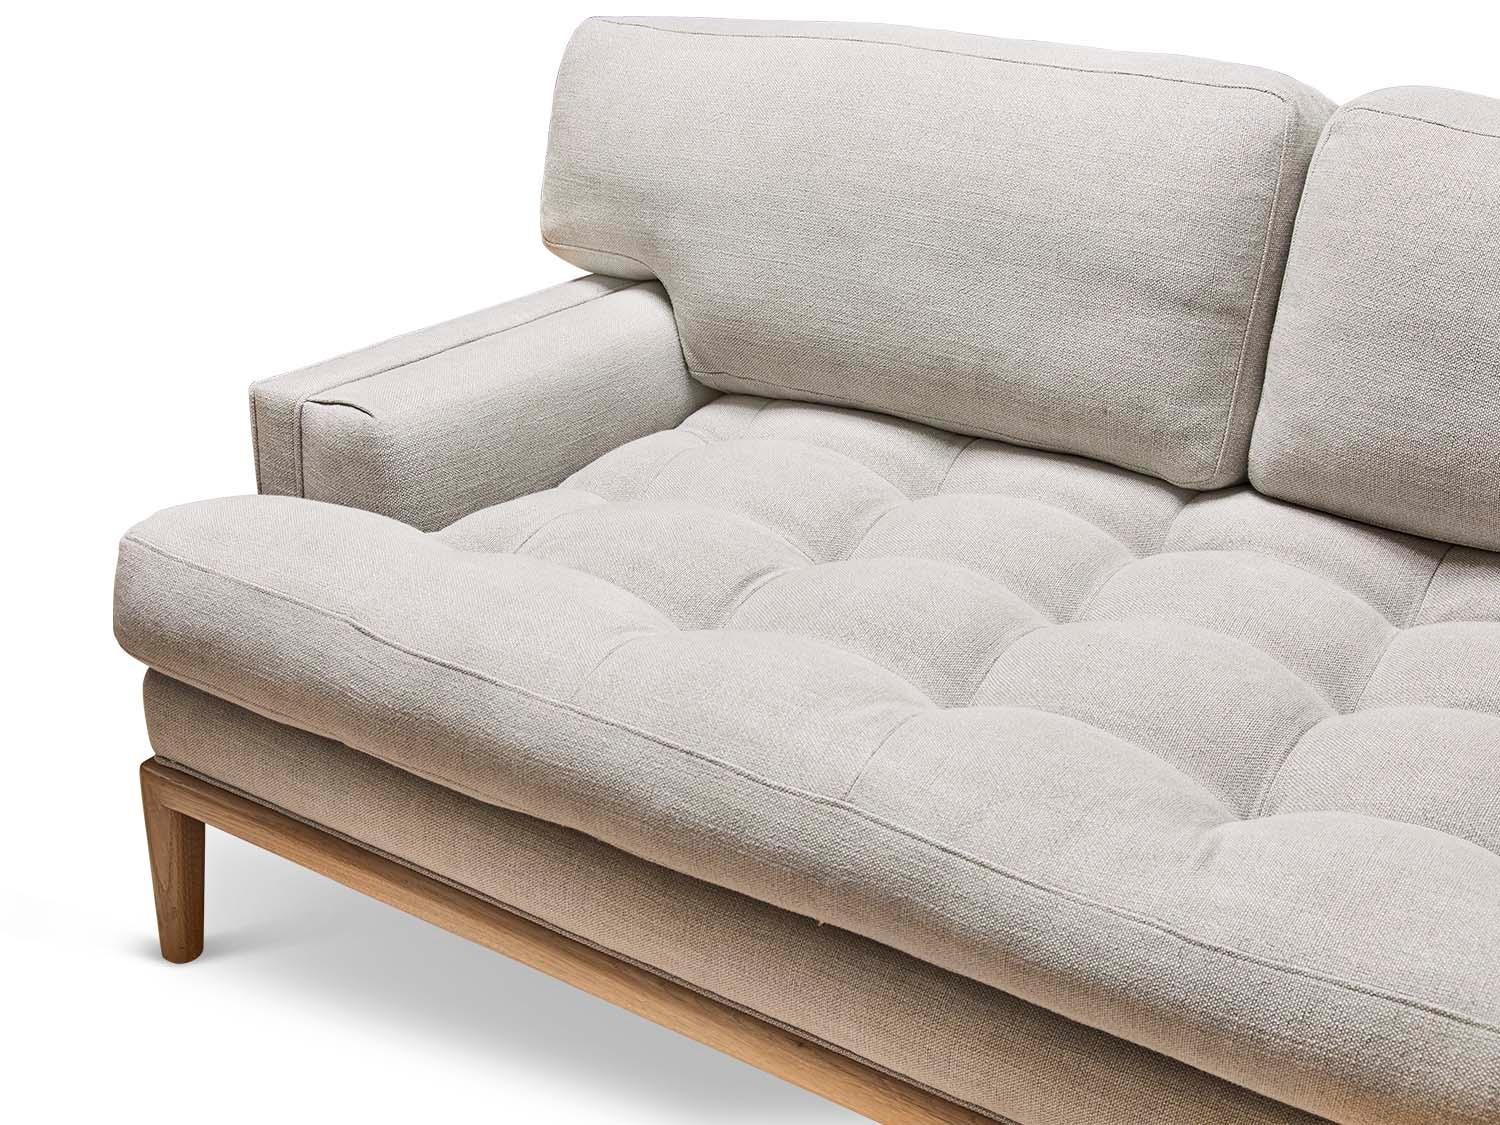 lawson fenning sofa